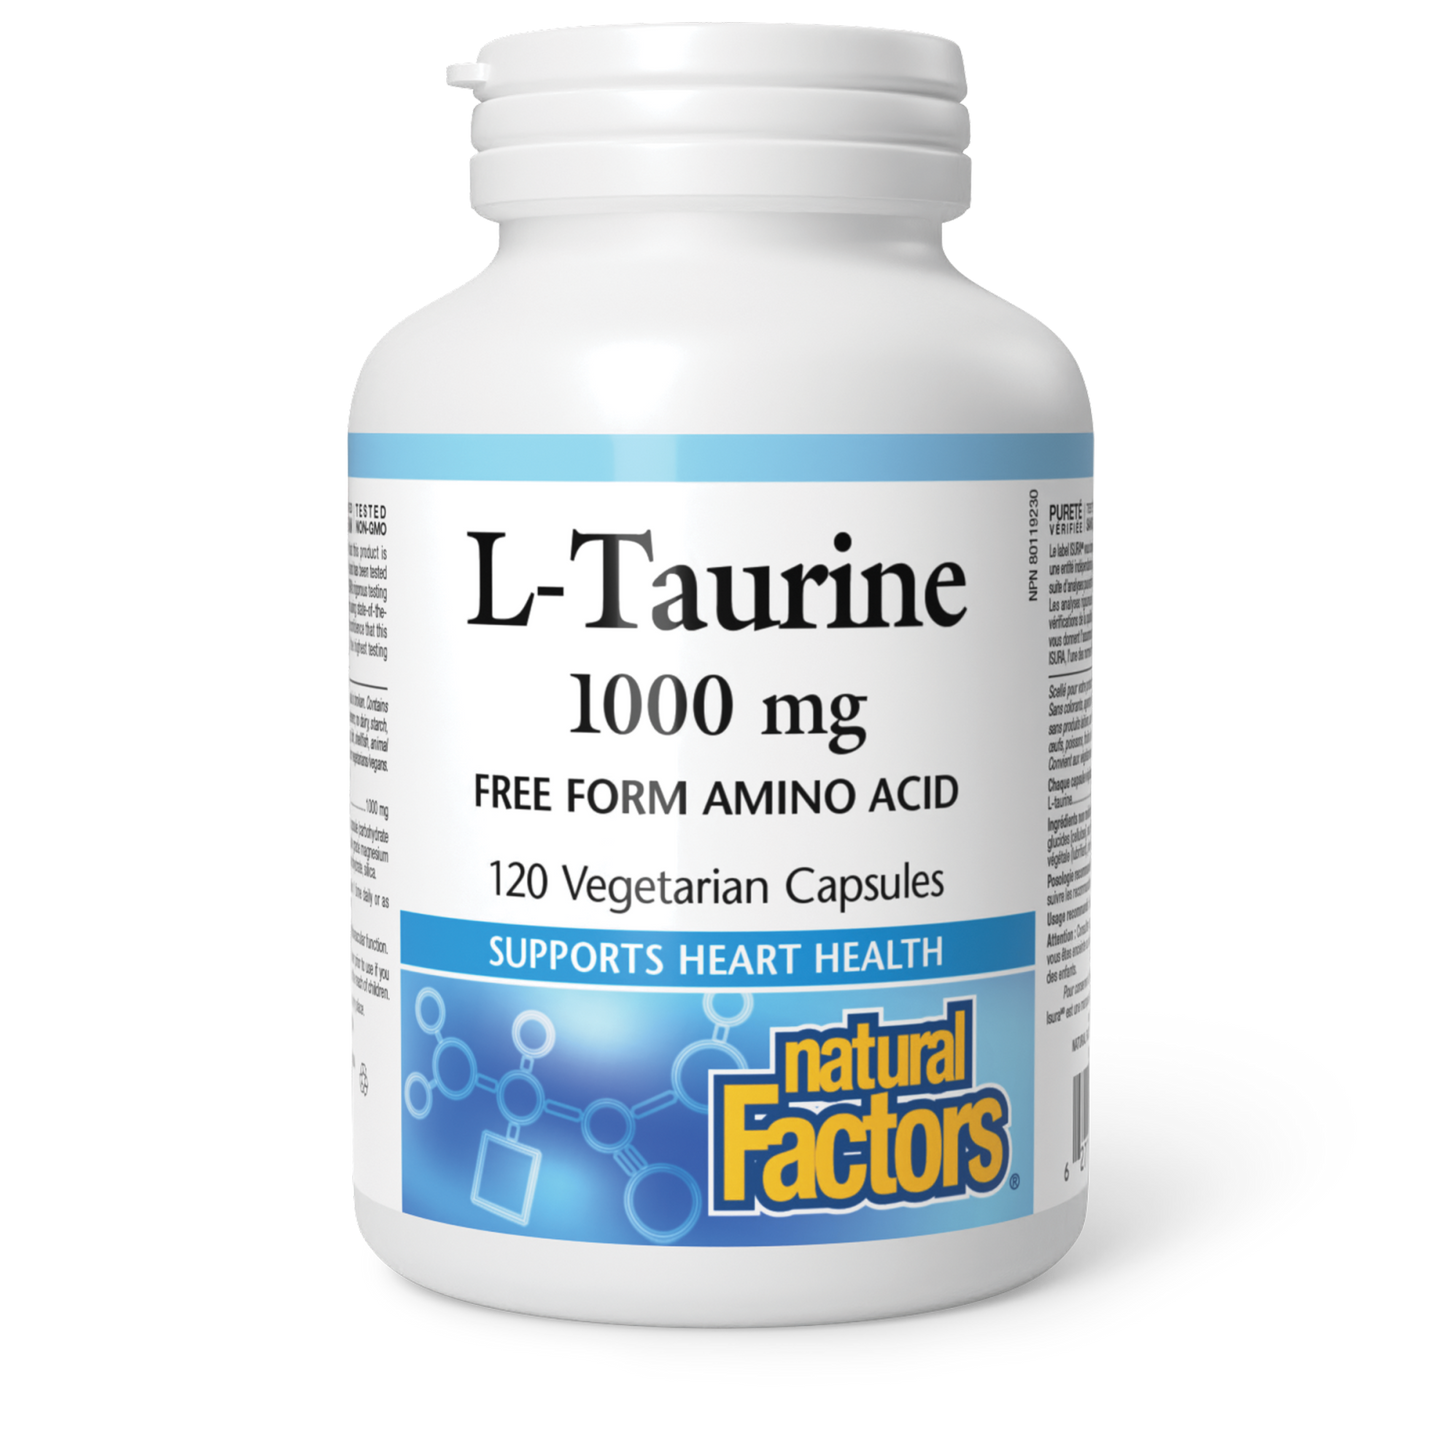 L-Taurine 1000 mg, Natural Factors|v|image|2864